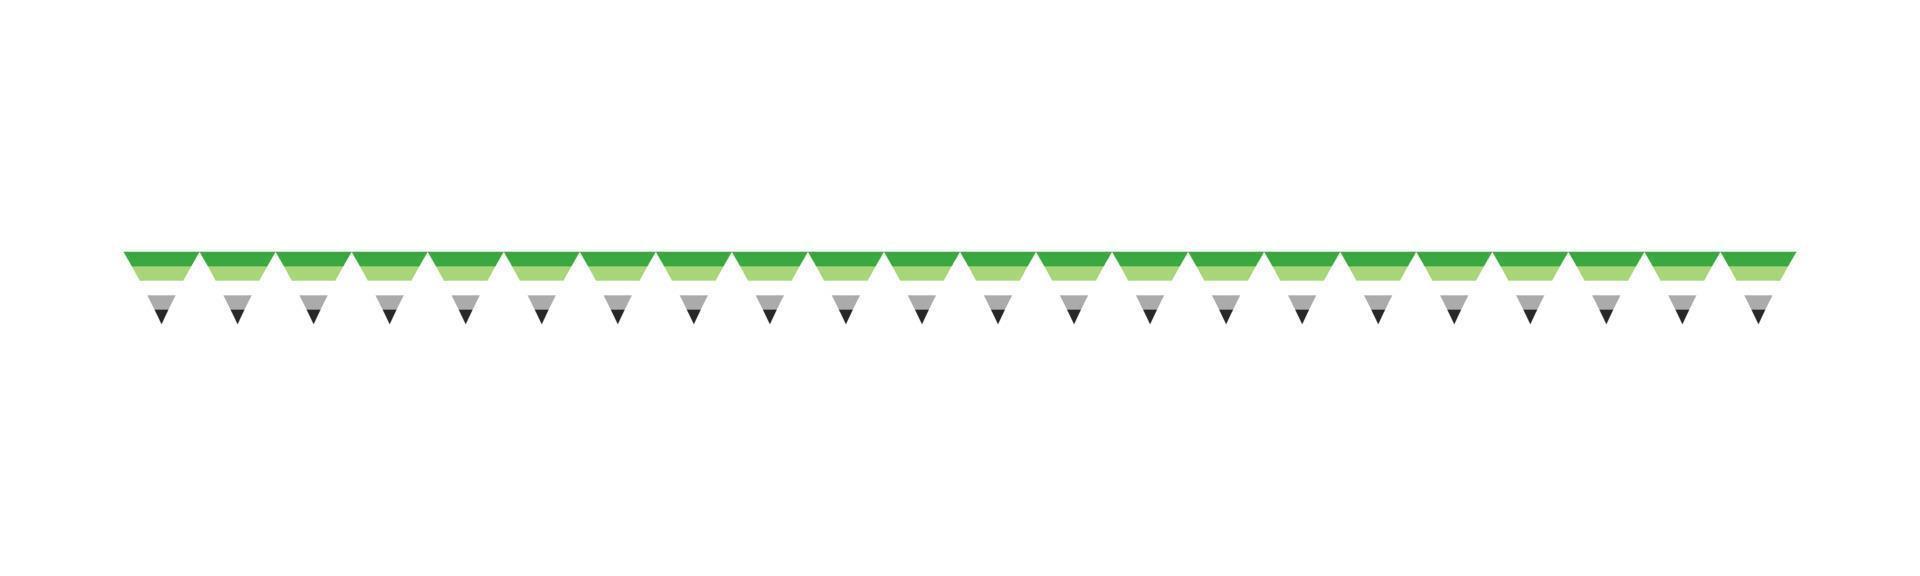 een romanticus vlag guirlande. trots maand vlaggedoek gemakkelijk vector grafiek.